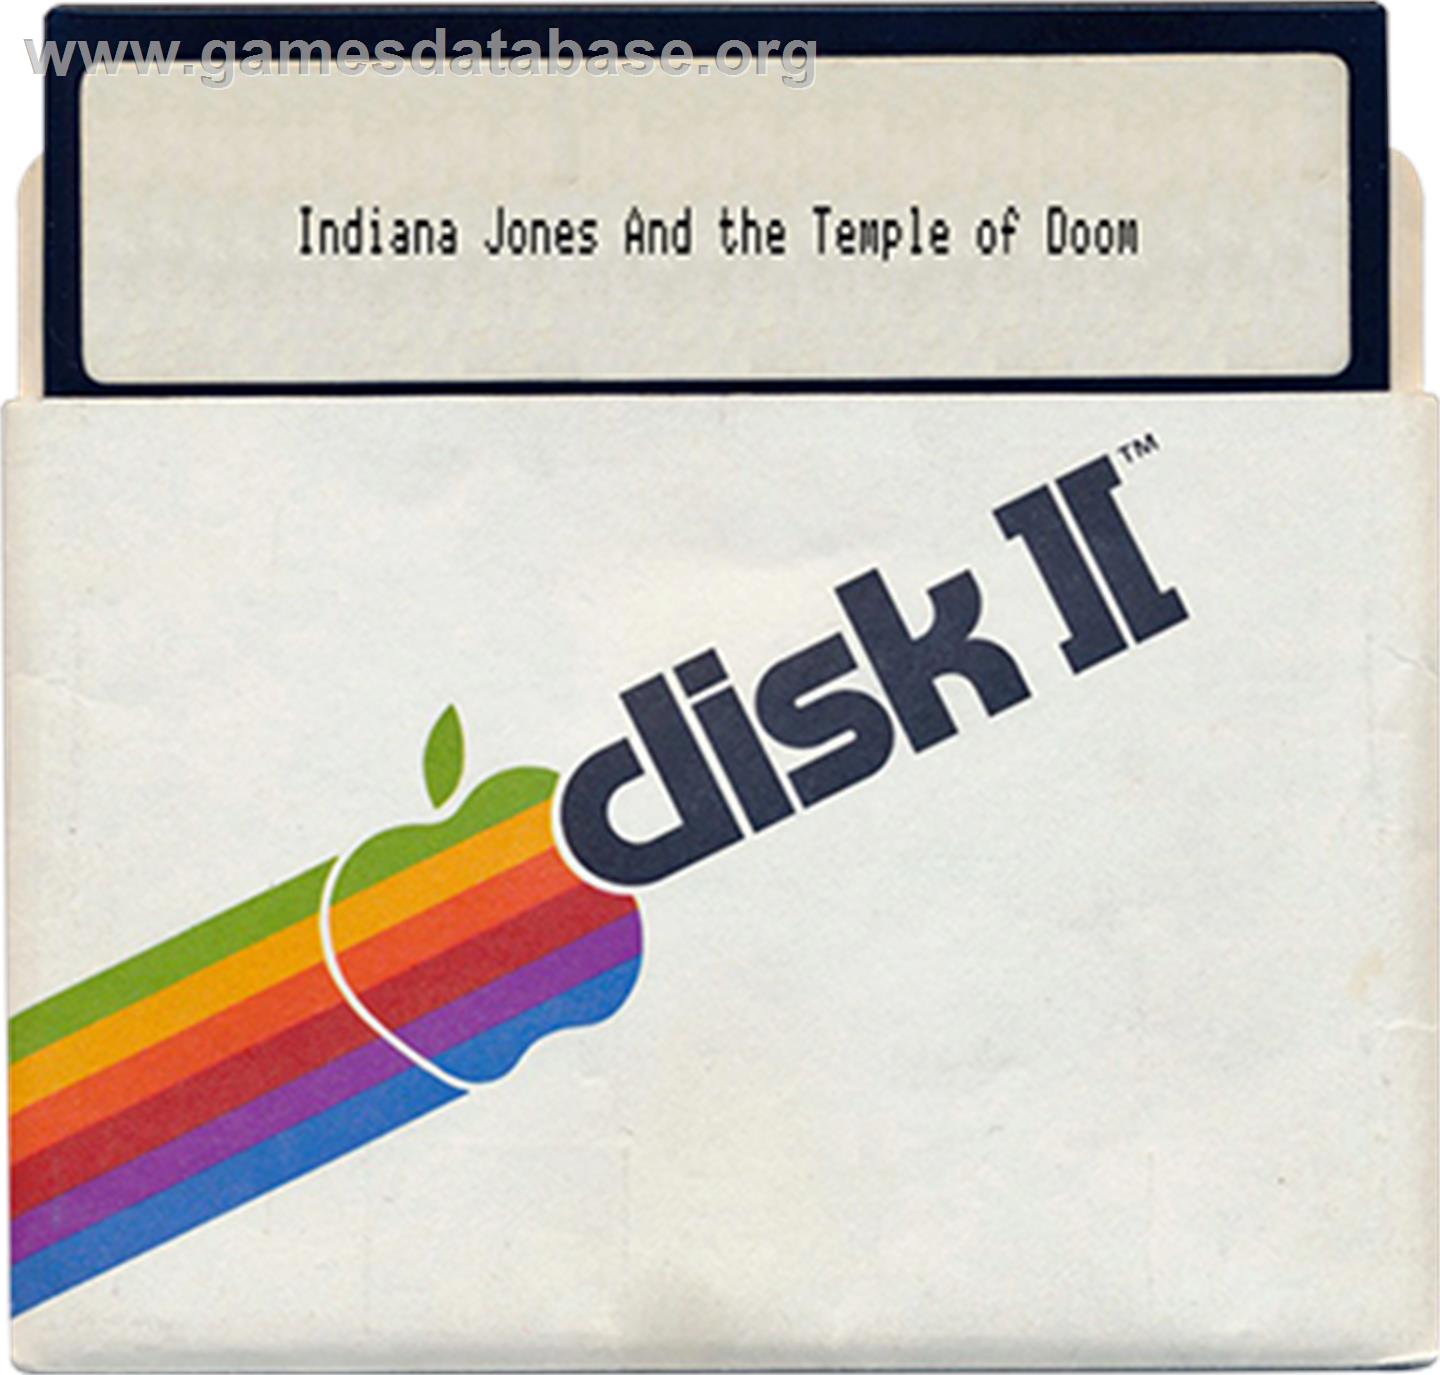 Indiana Jones and the Temple of Doom - Apple II - Artwork - Disc